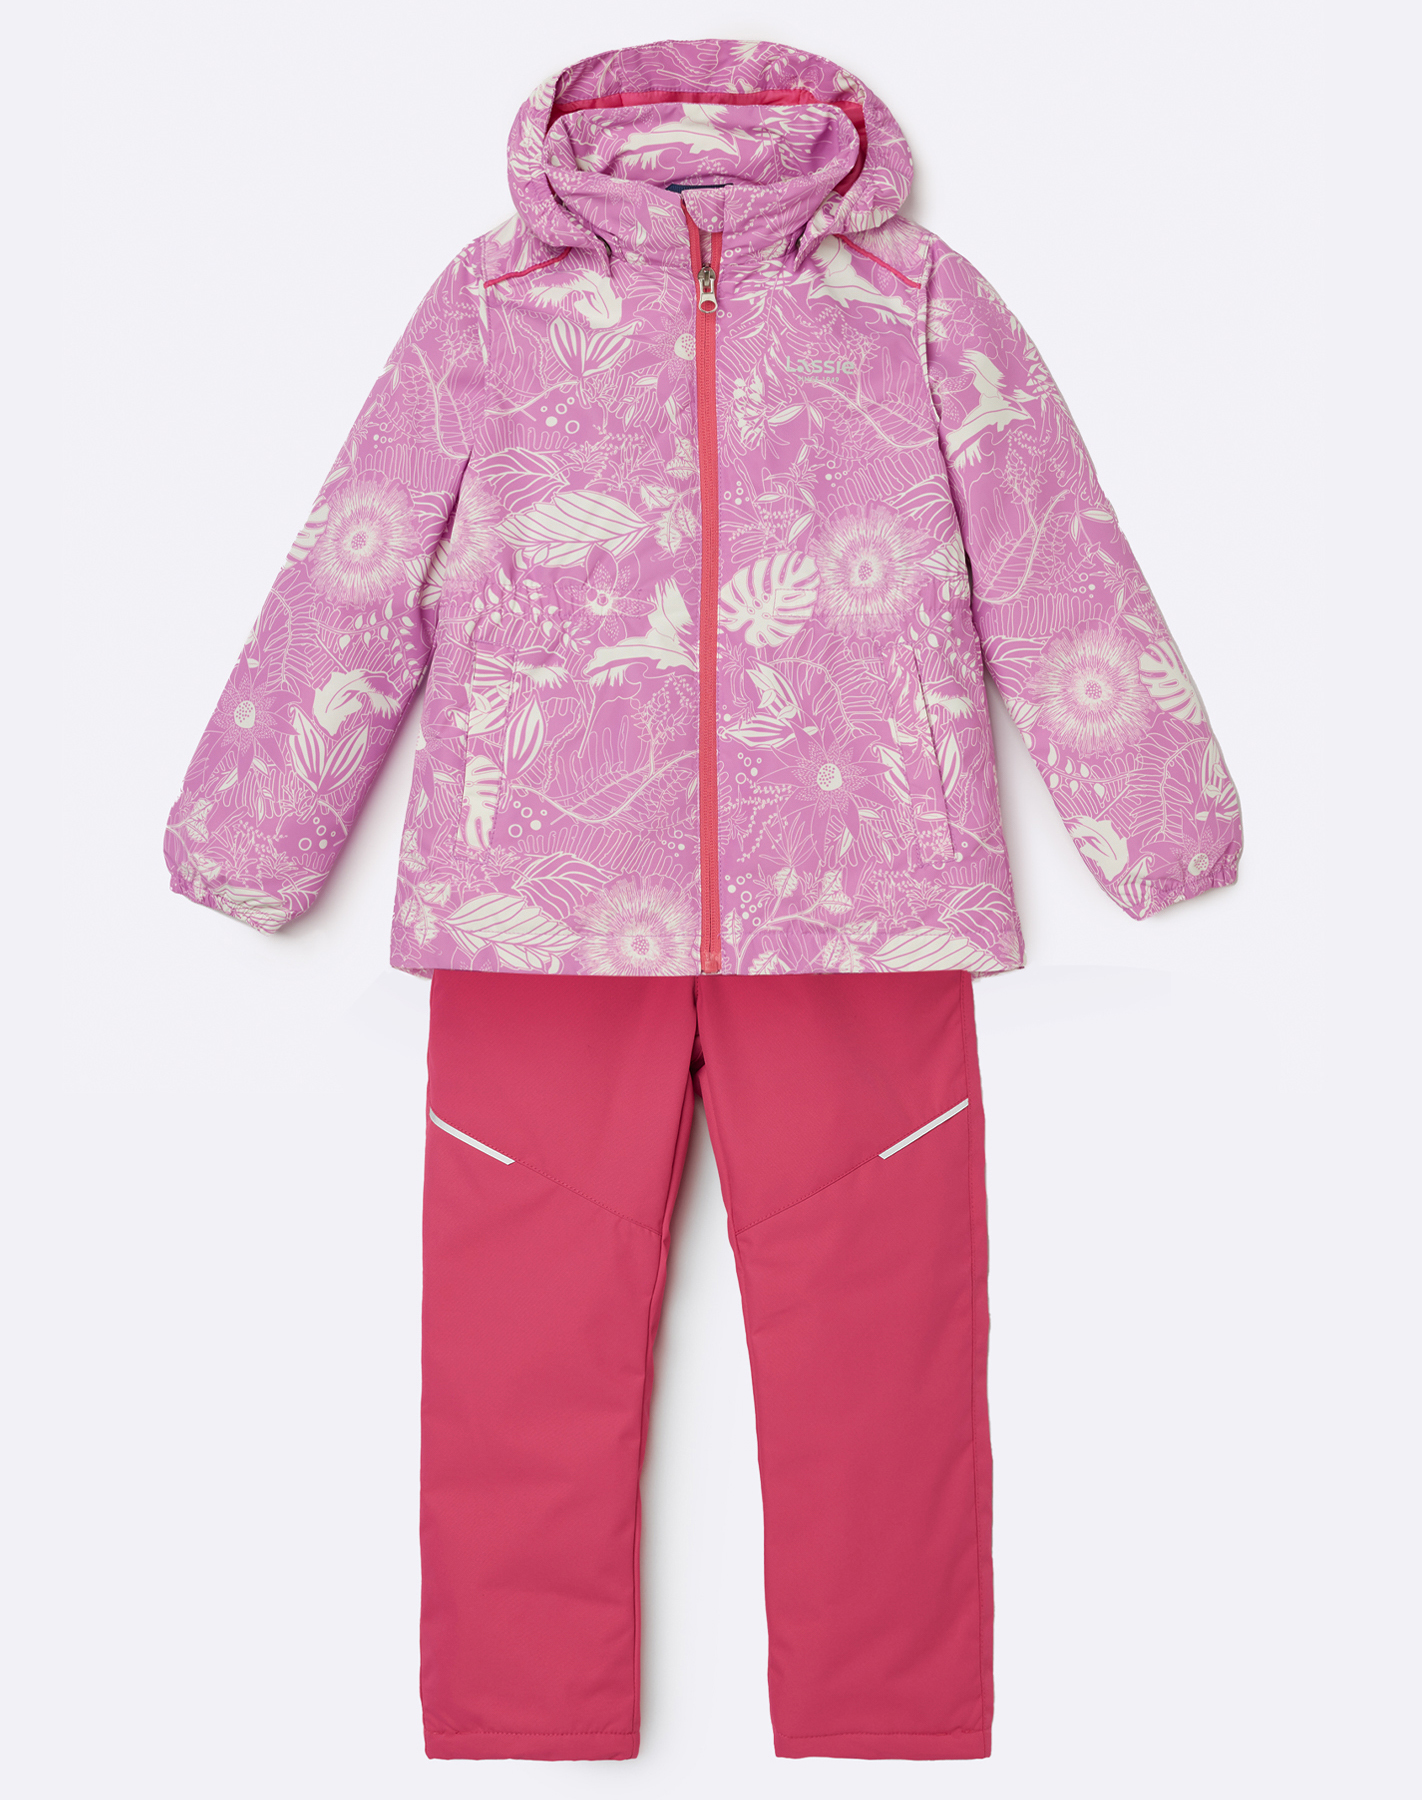 Комплект верхней одежды детский Lassie Manna 7100042A, с рисунком  розовый, 128